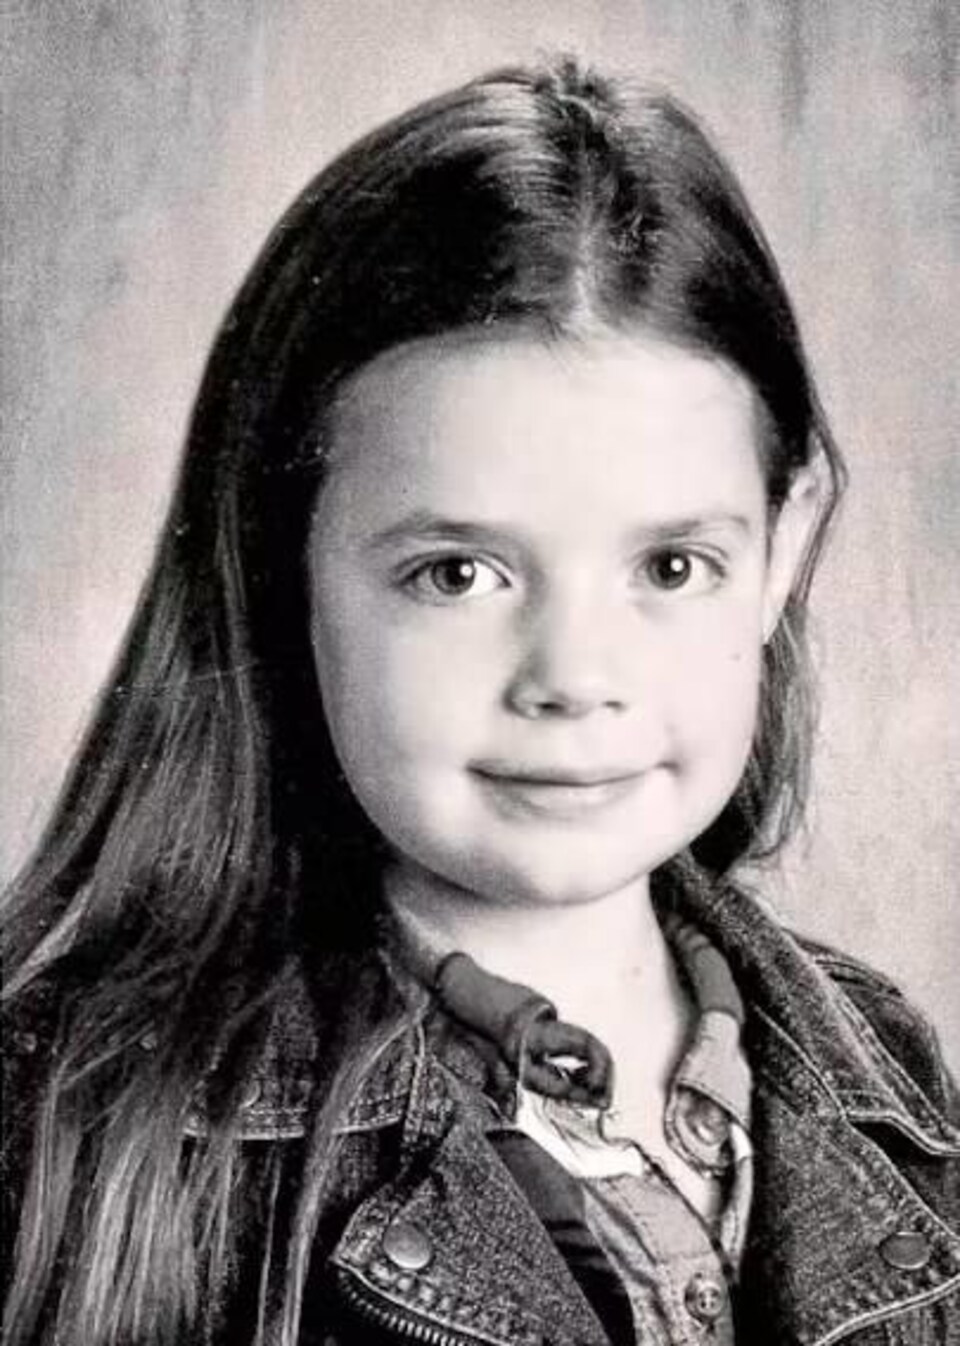 Portrait en noir et blanc d'une petite fille.